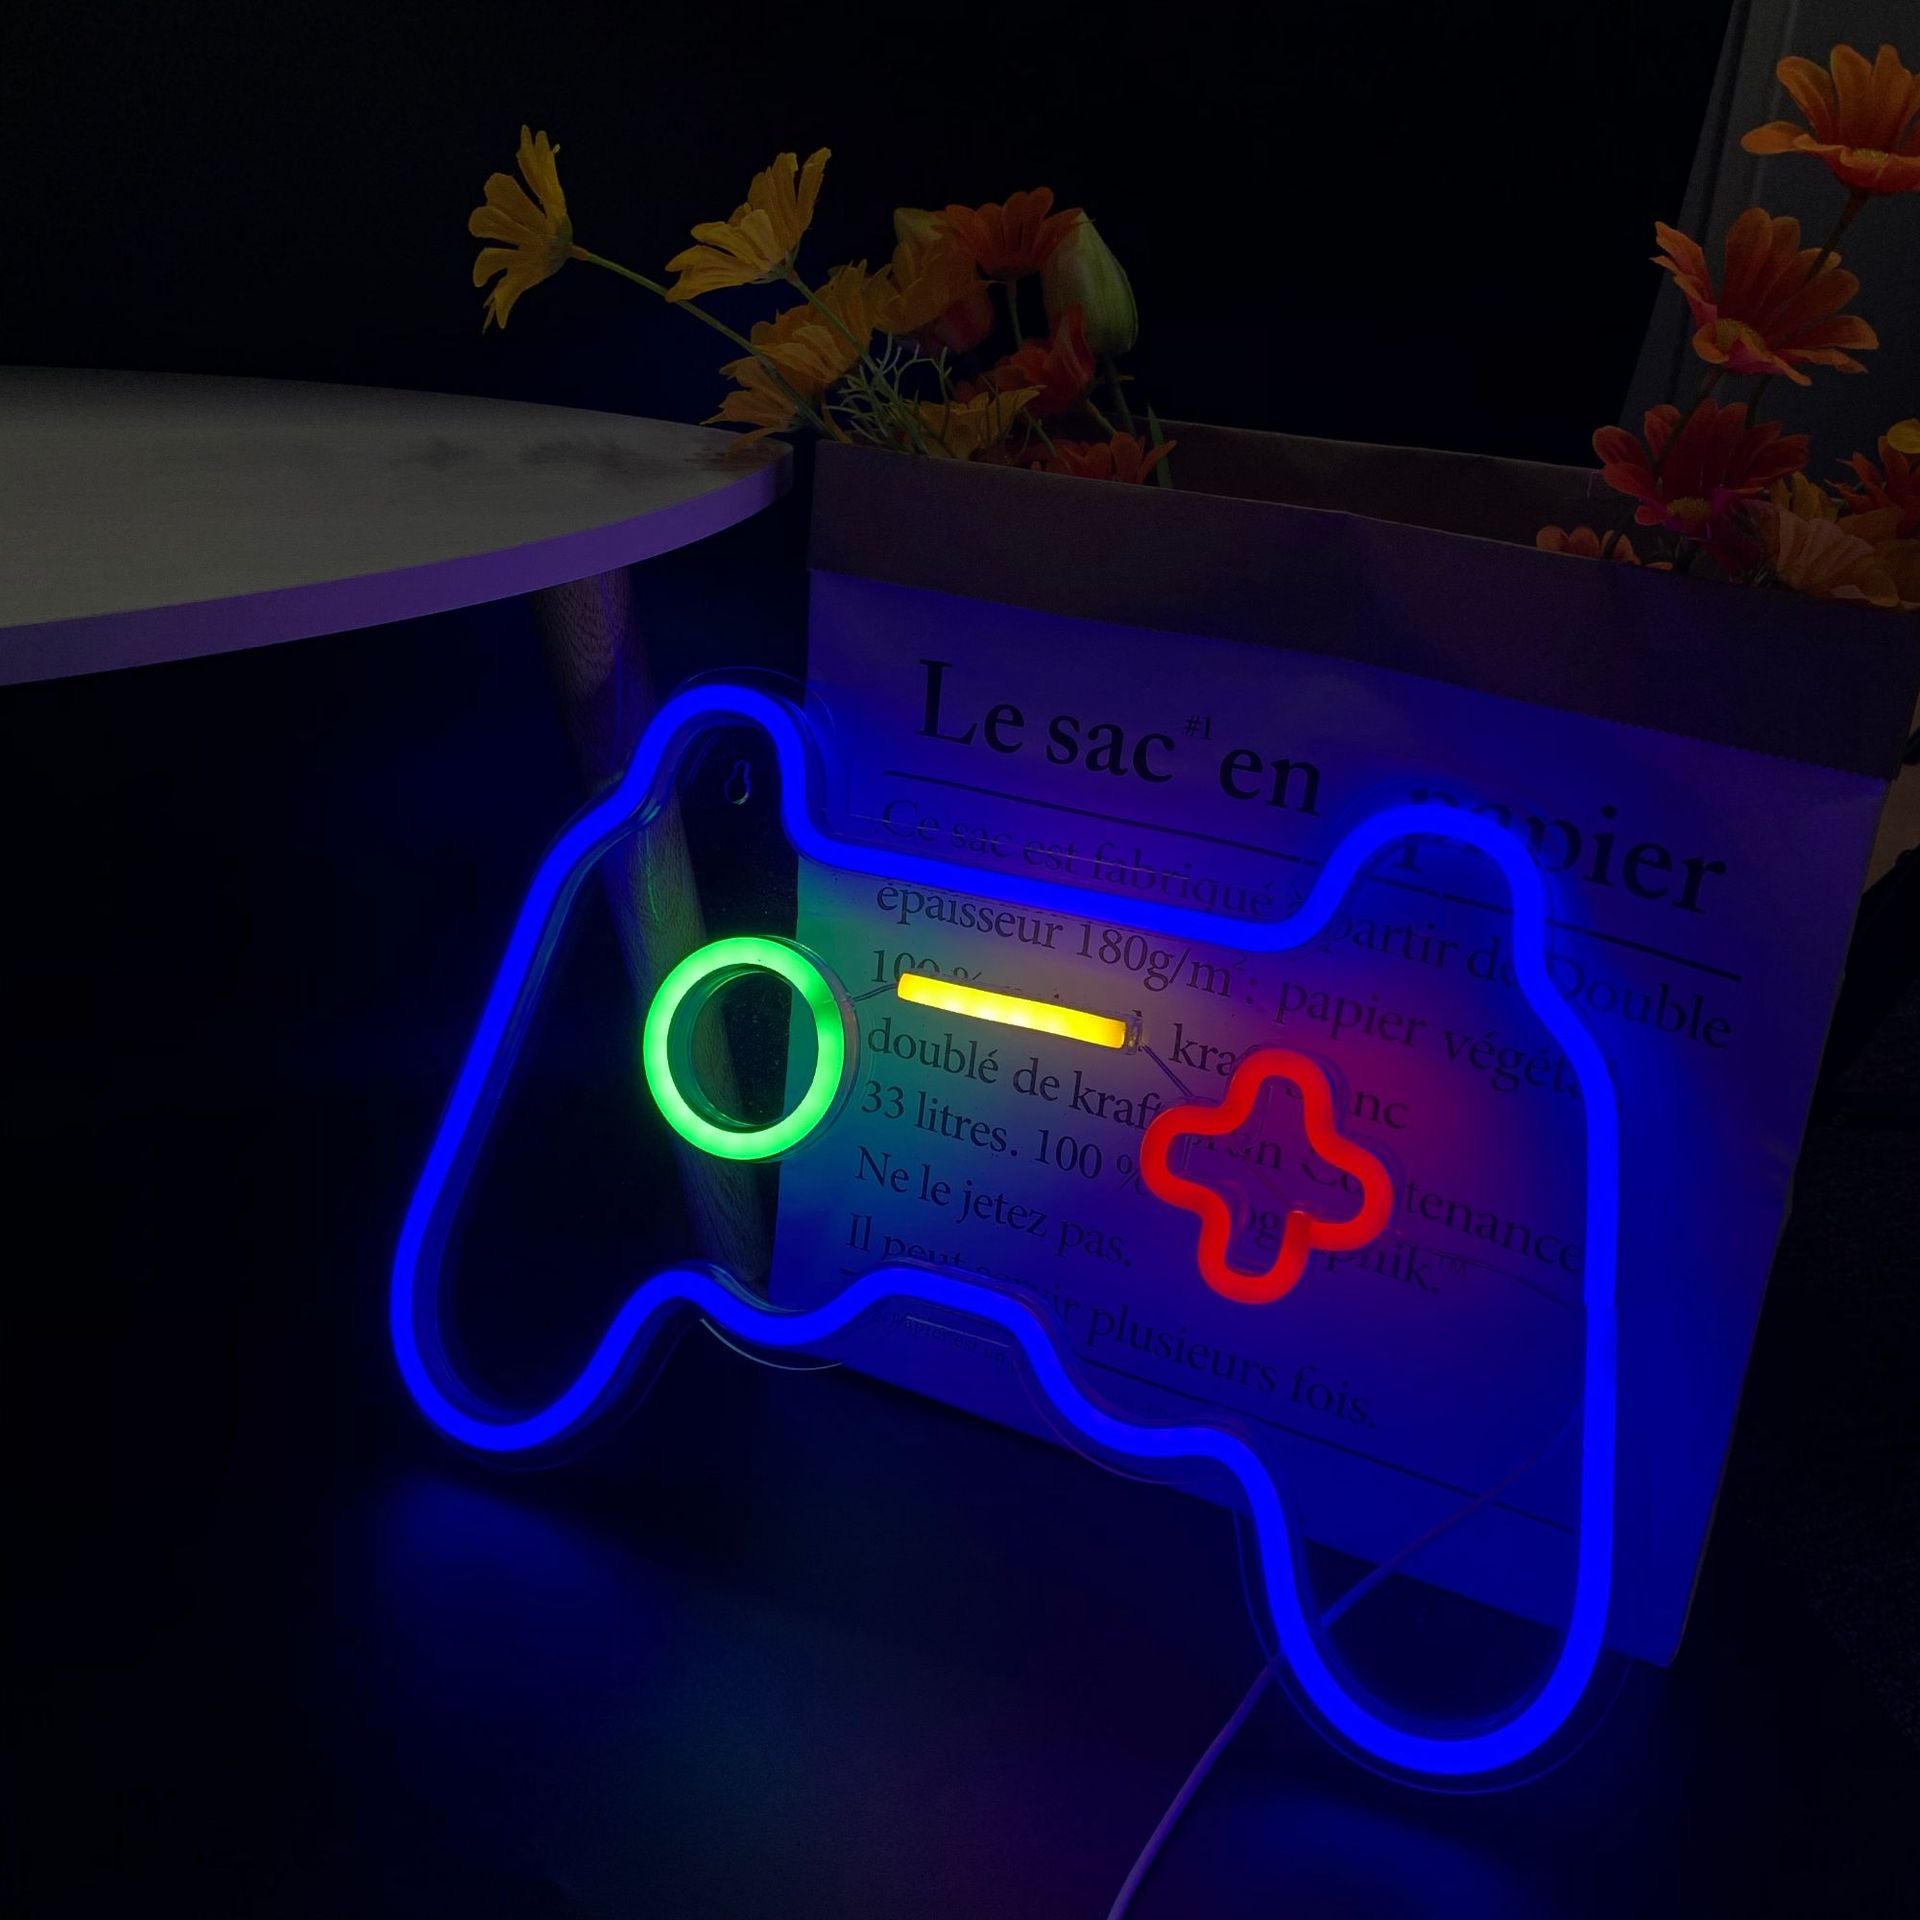 Gamer neon light logotyp (16 x 11 tum) gamepad neon light för  spelrumsinredning adbf | Fyndiq